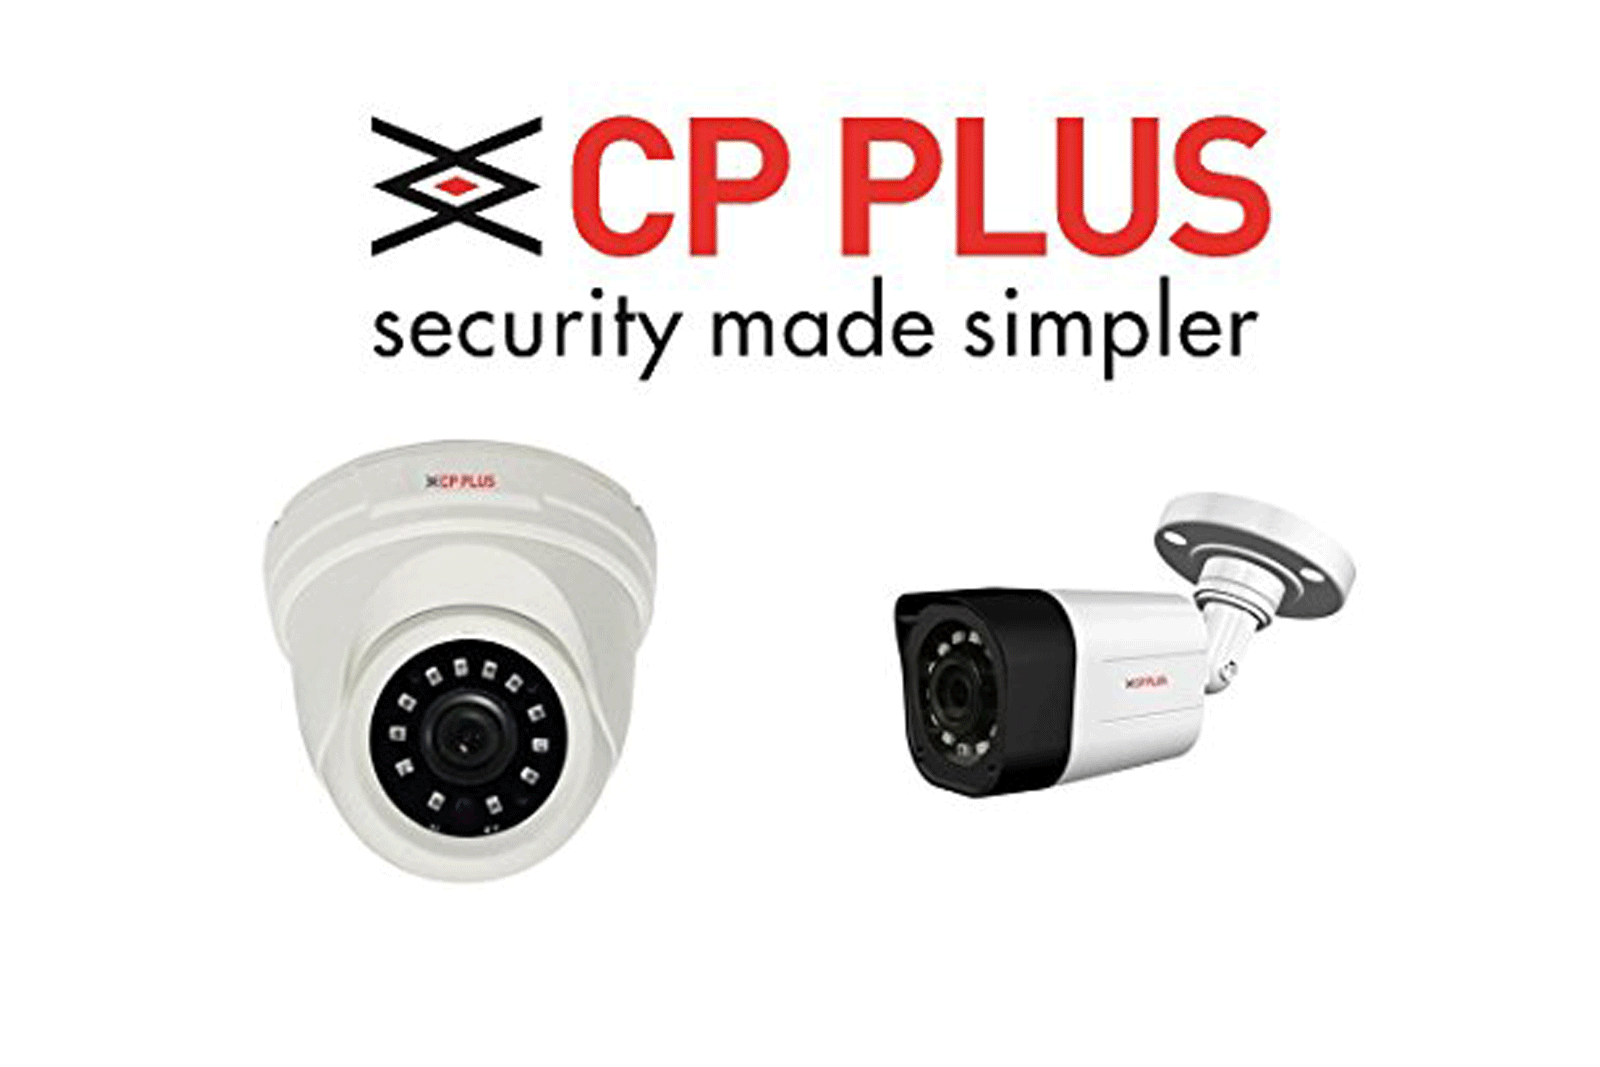 Thành phố an toàn với giải pháp camera CP Plus